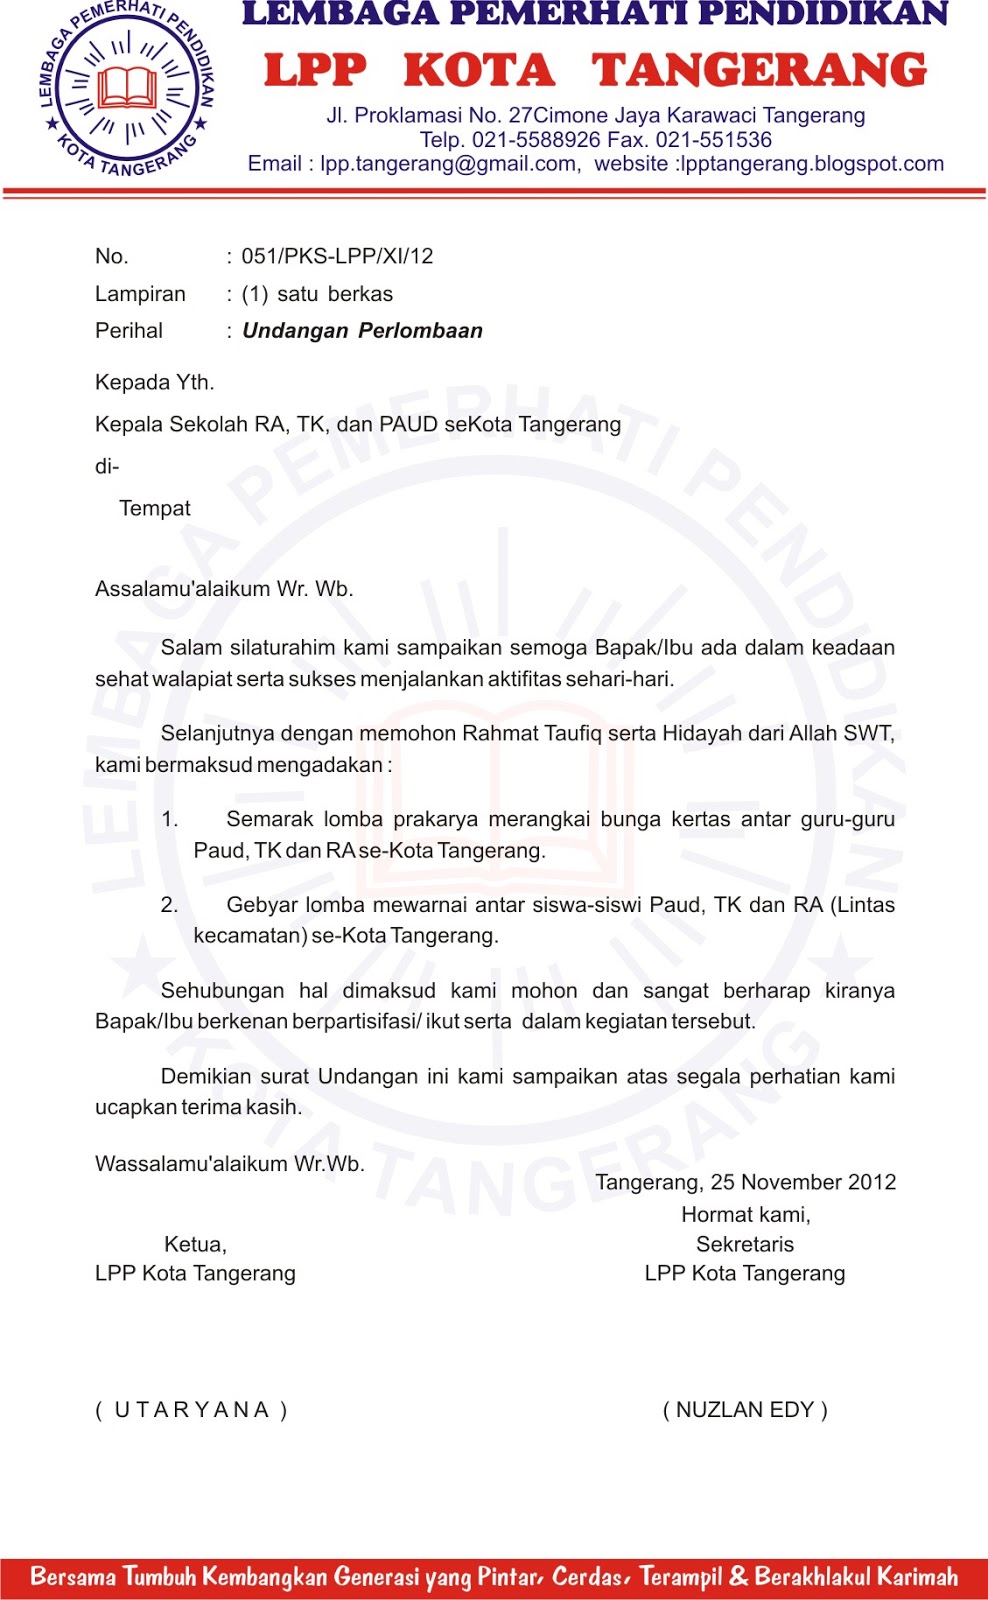 Lembaga Pemerhati Pendidikan Lpp Kota Tangerang